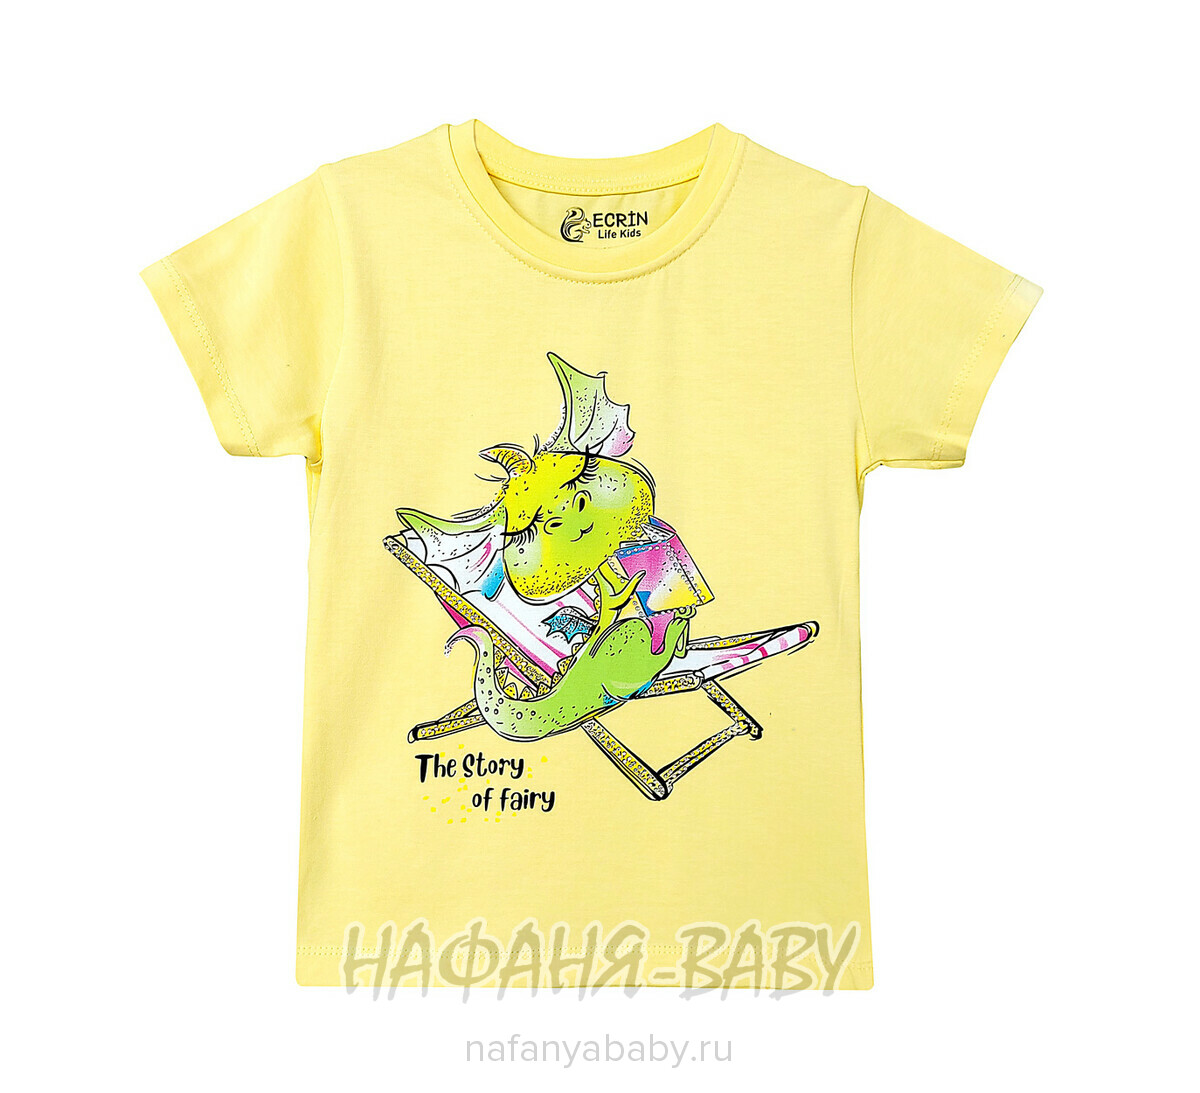 Детская футболка ECRIN арт. 5226, 4-8 лет, цвет желтый, оптом Турция